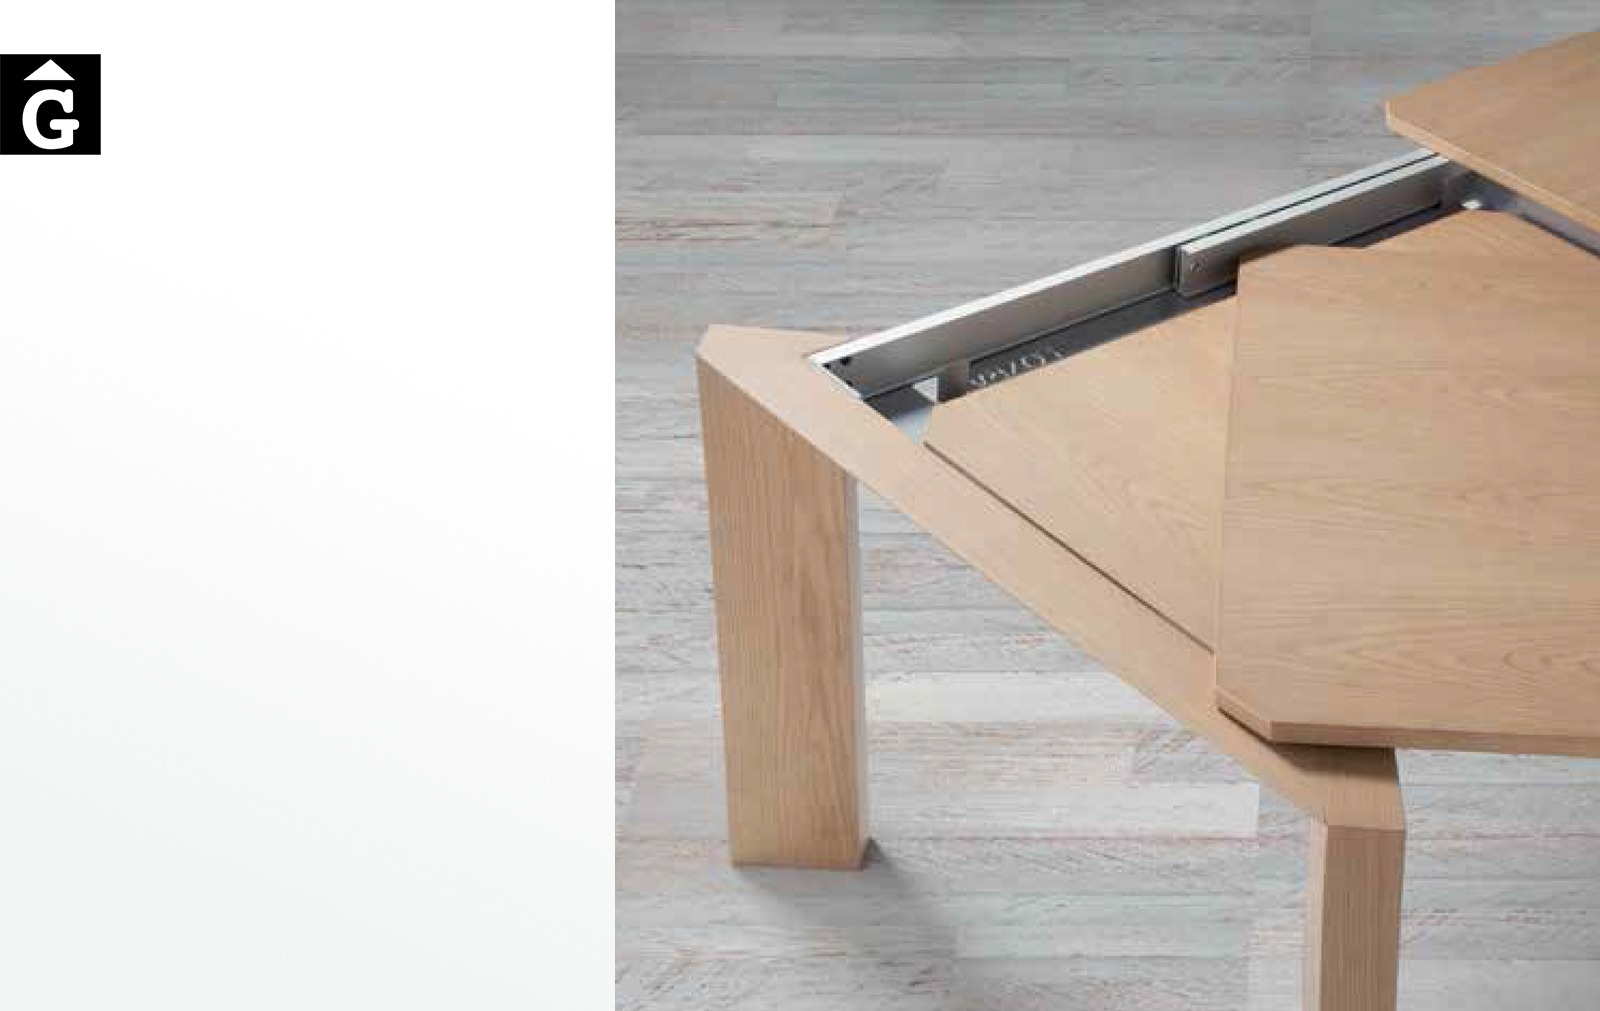 55 2 Taula Rho extensible Loyra muebles by mobles Gifreu Idees per la llar moble de qualitat